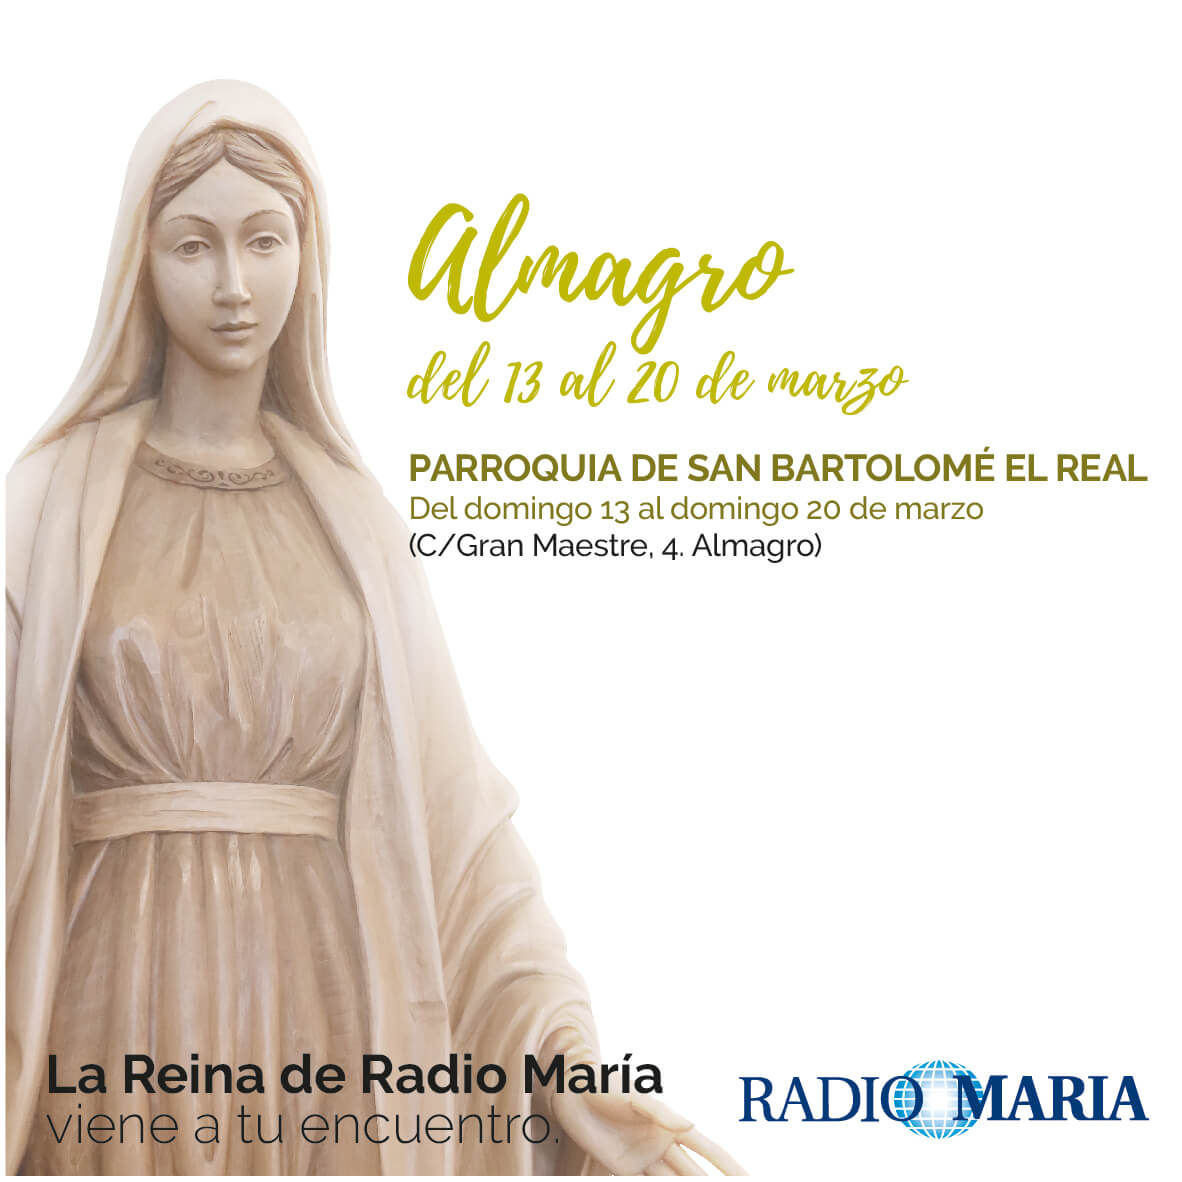 La Reina de Radio María visita Almagro